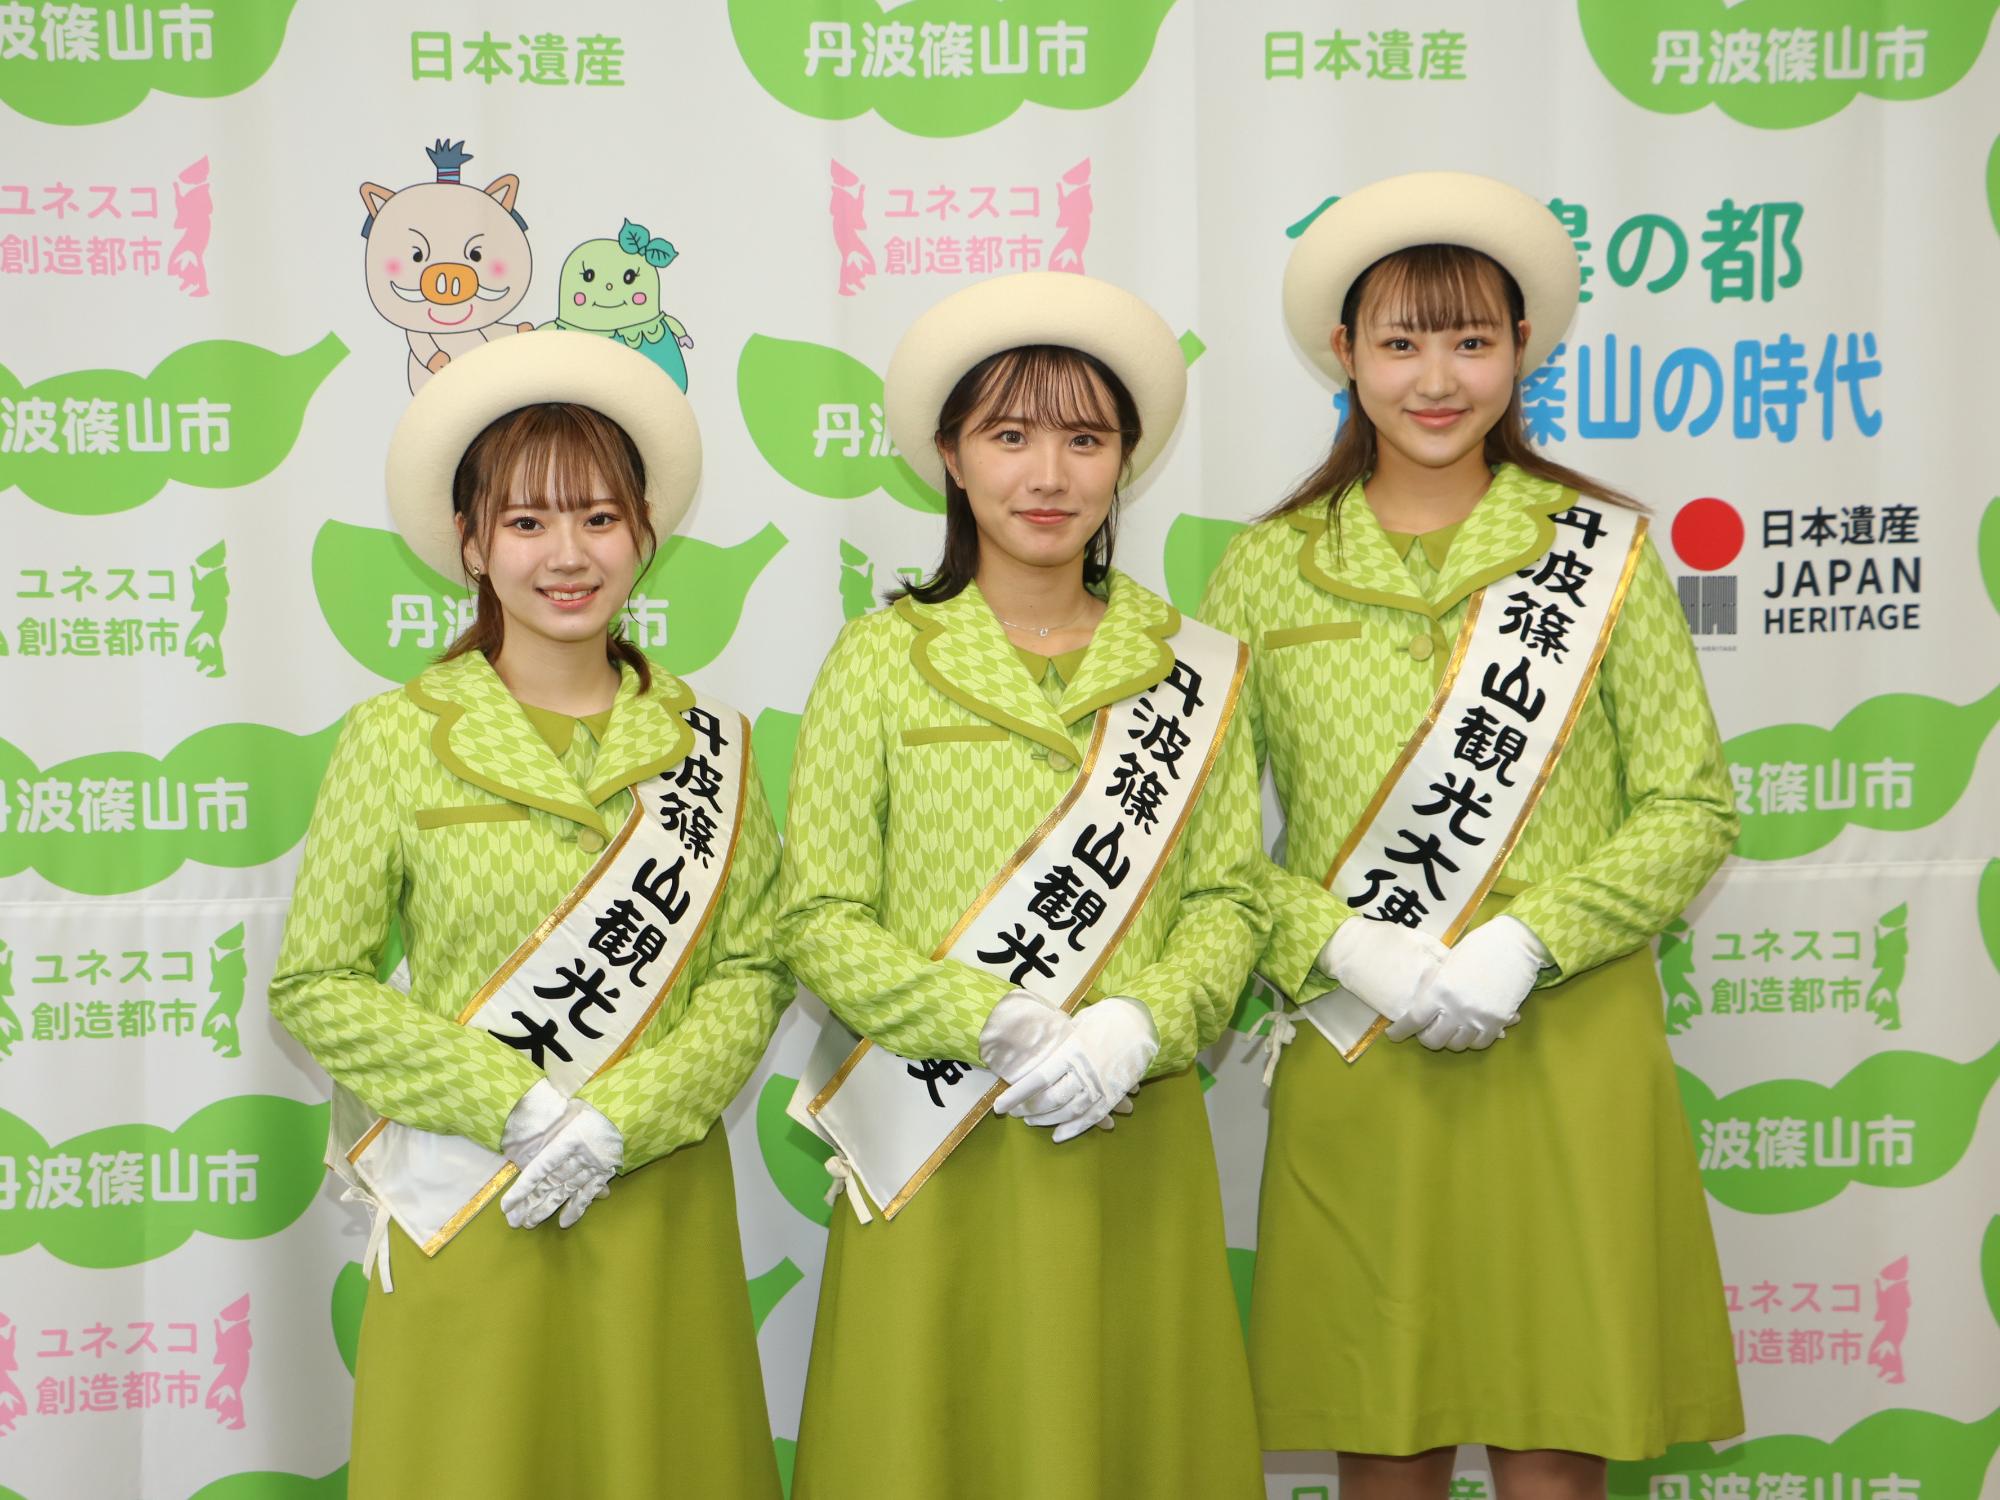 任命式で、観光大使の制服を着た3人の女性の記念撮影